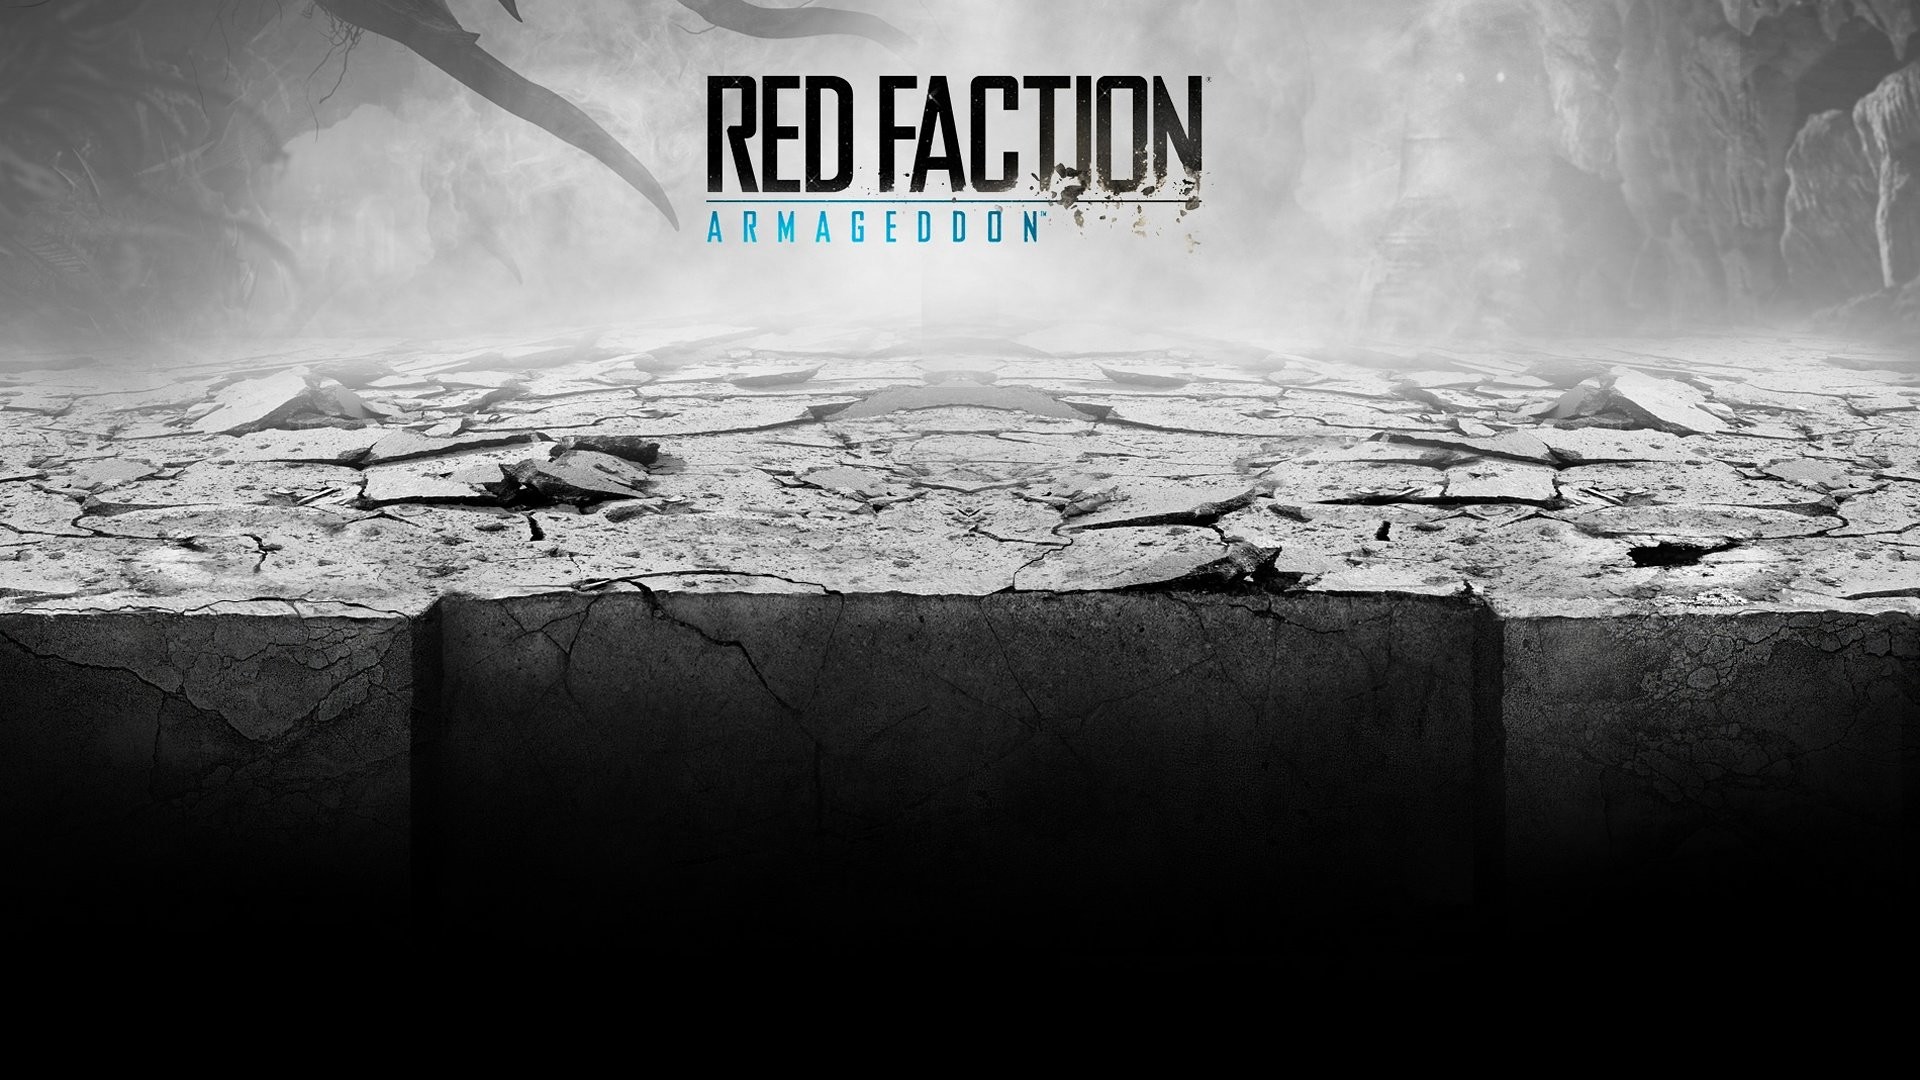 1920x1080 Wallpaper zu Red Faction: Armageddon herunterladen